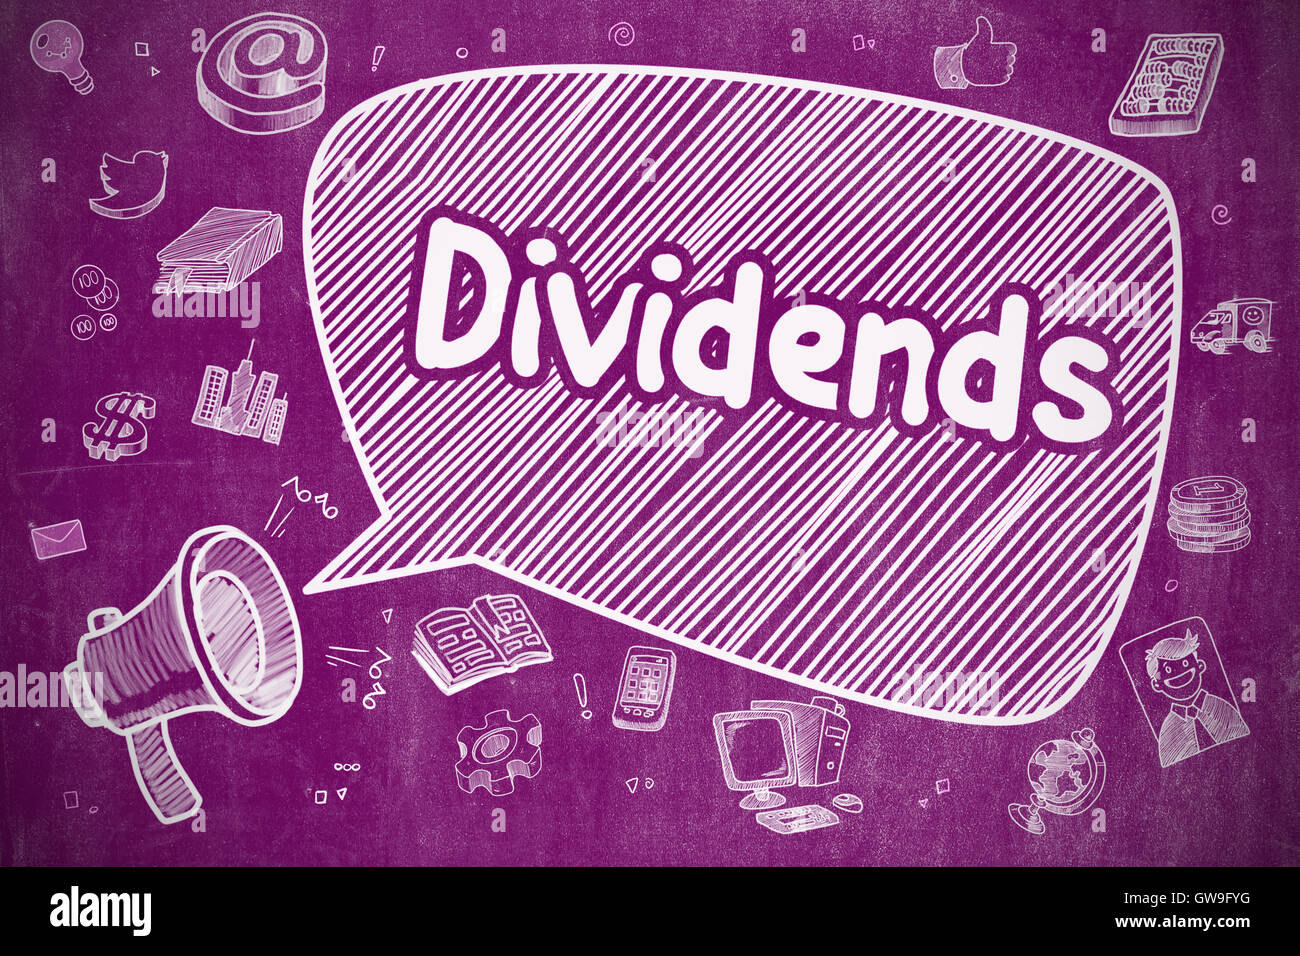 Dividends - Cartoon Illustration on Purple Chalkboard. Stock Photo